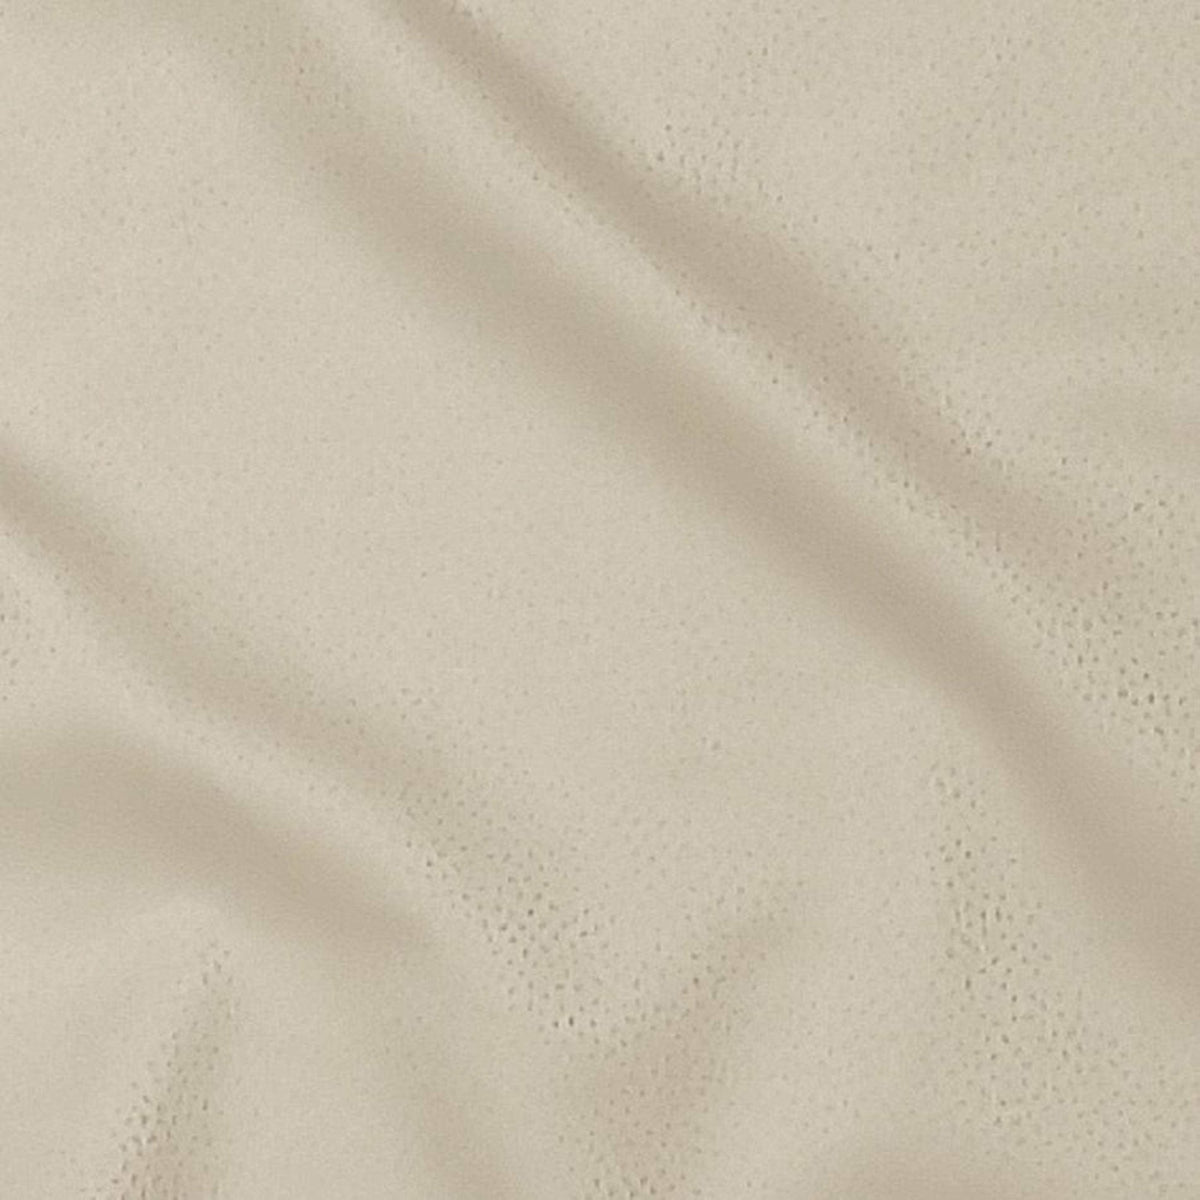 SDH Gobi Bedding Swatch Latte Fine Linens